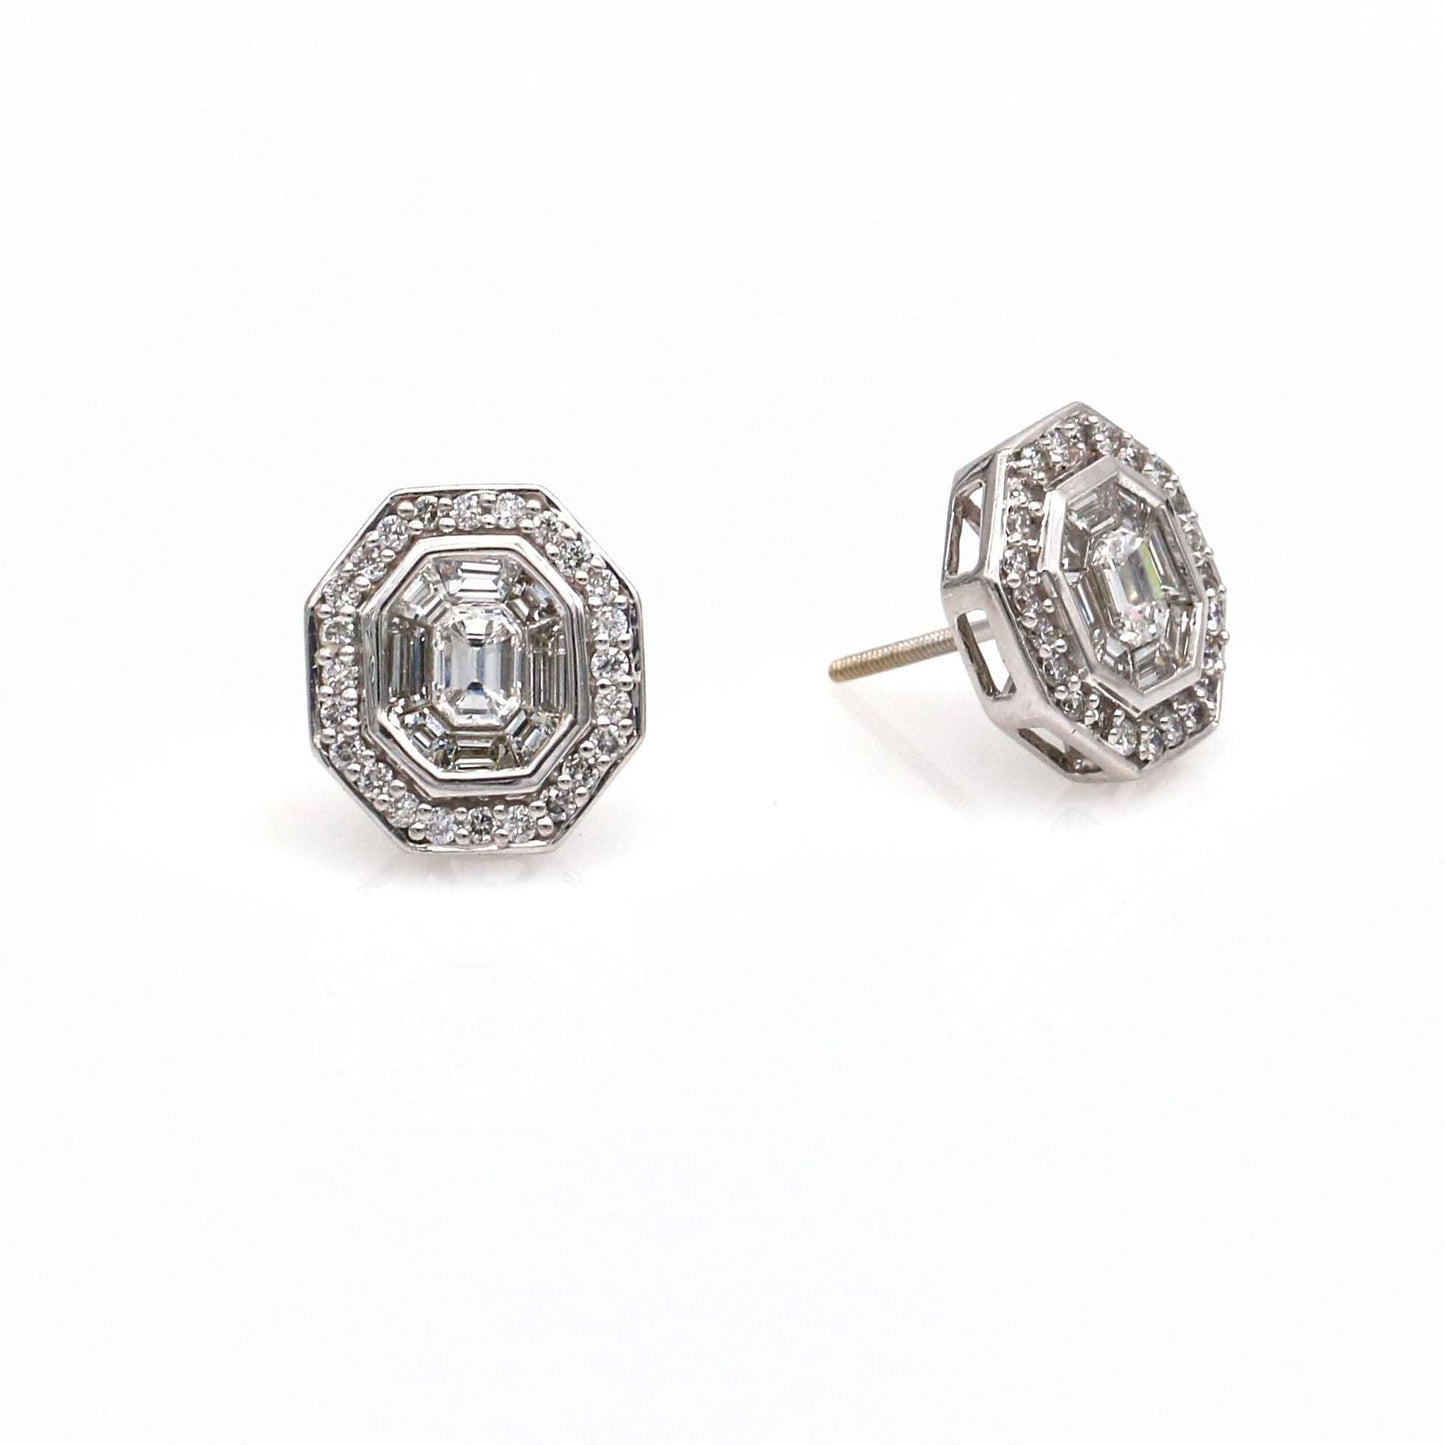 Women's Art Deco Style Diamond Stud Earrings in 14k White Gold - 31 Jewels Inc.